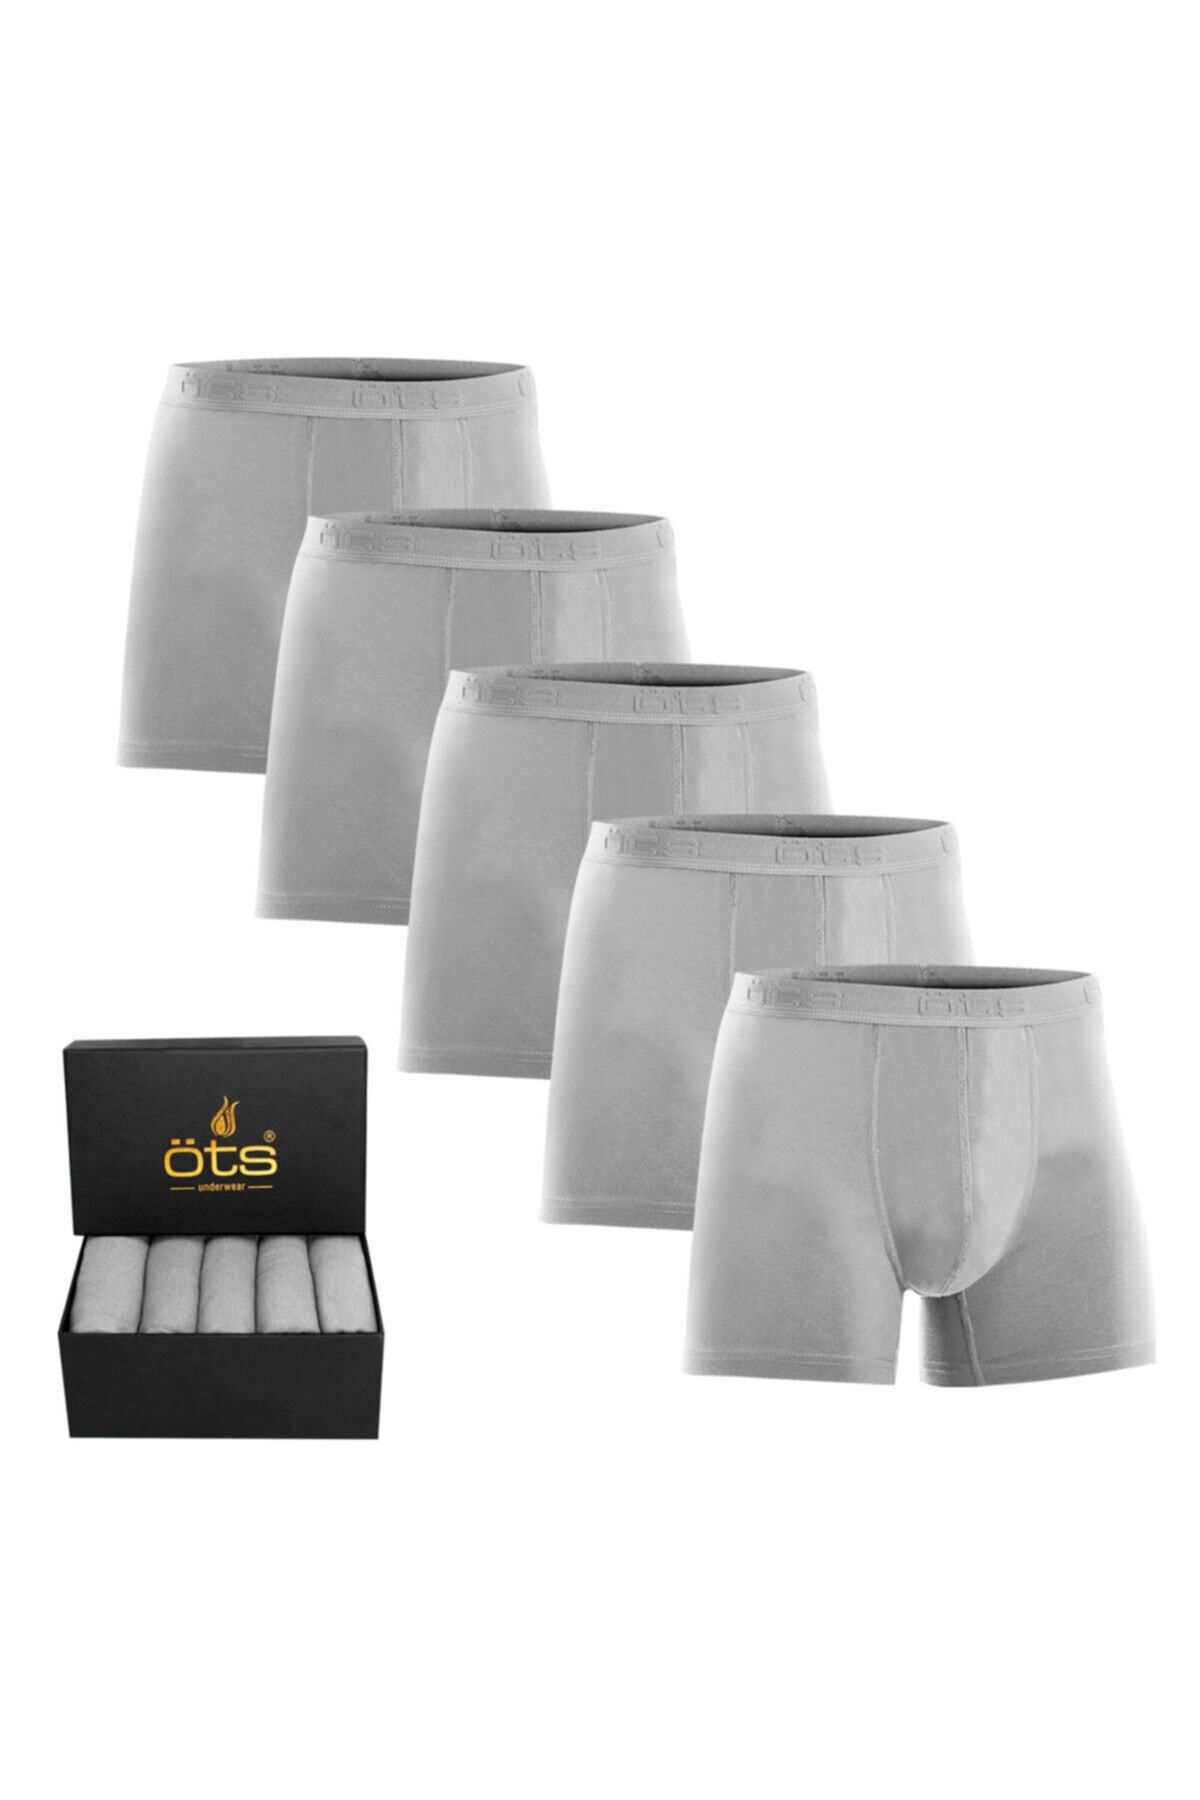 Öts Erkek Modal Boxer 5'li Paket, Pamuklu Esnek Kumaş, Premium Özel Hediye Kutusunda